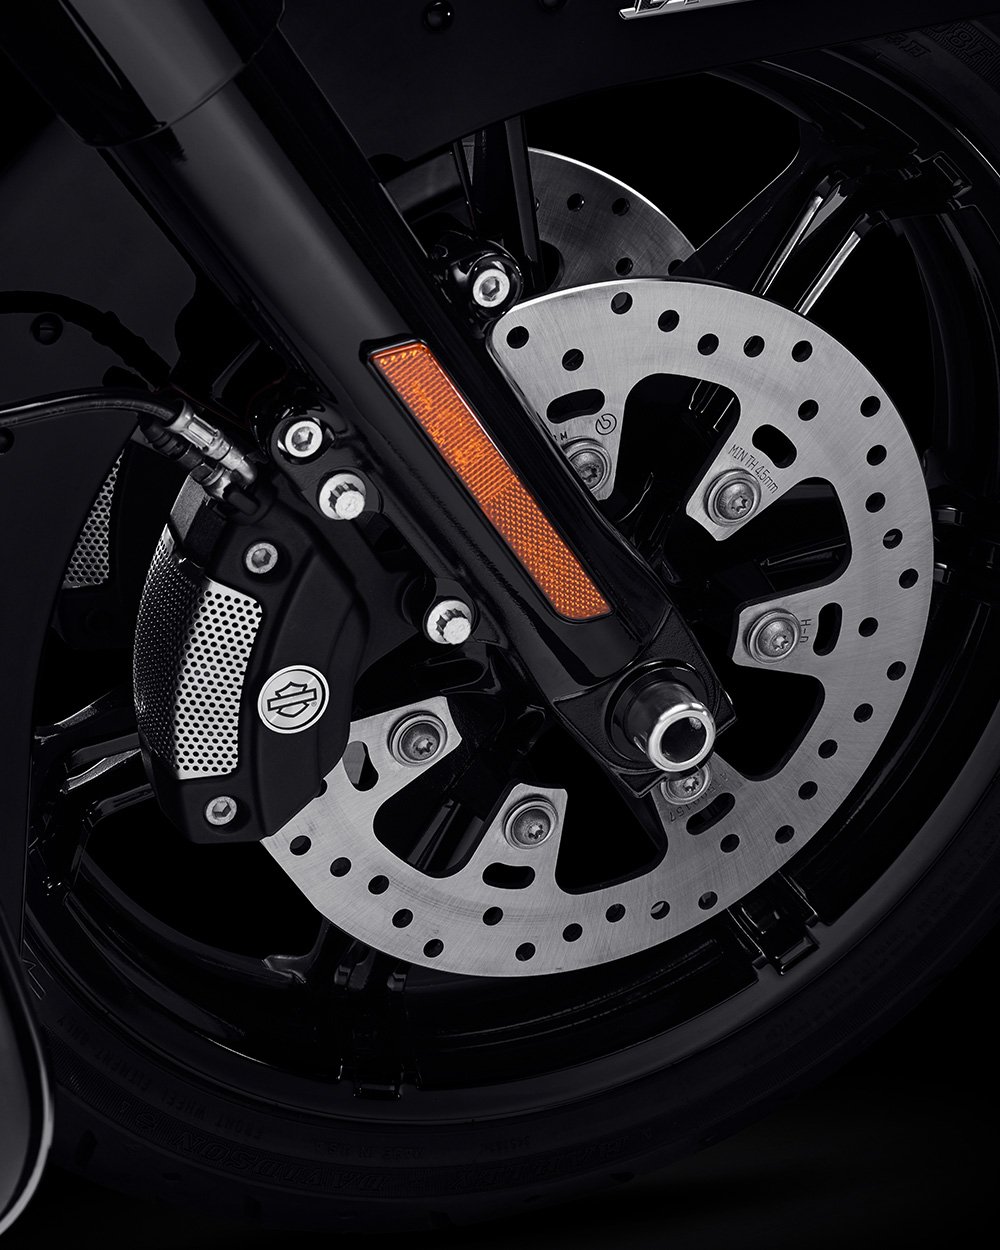 Freios combinados Reflex Brembo com ABS opcional em uma motocicleta Road Glide 2022